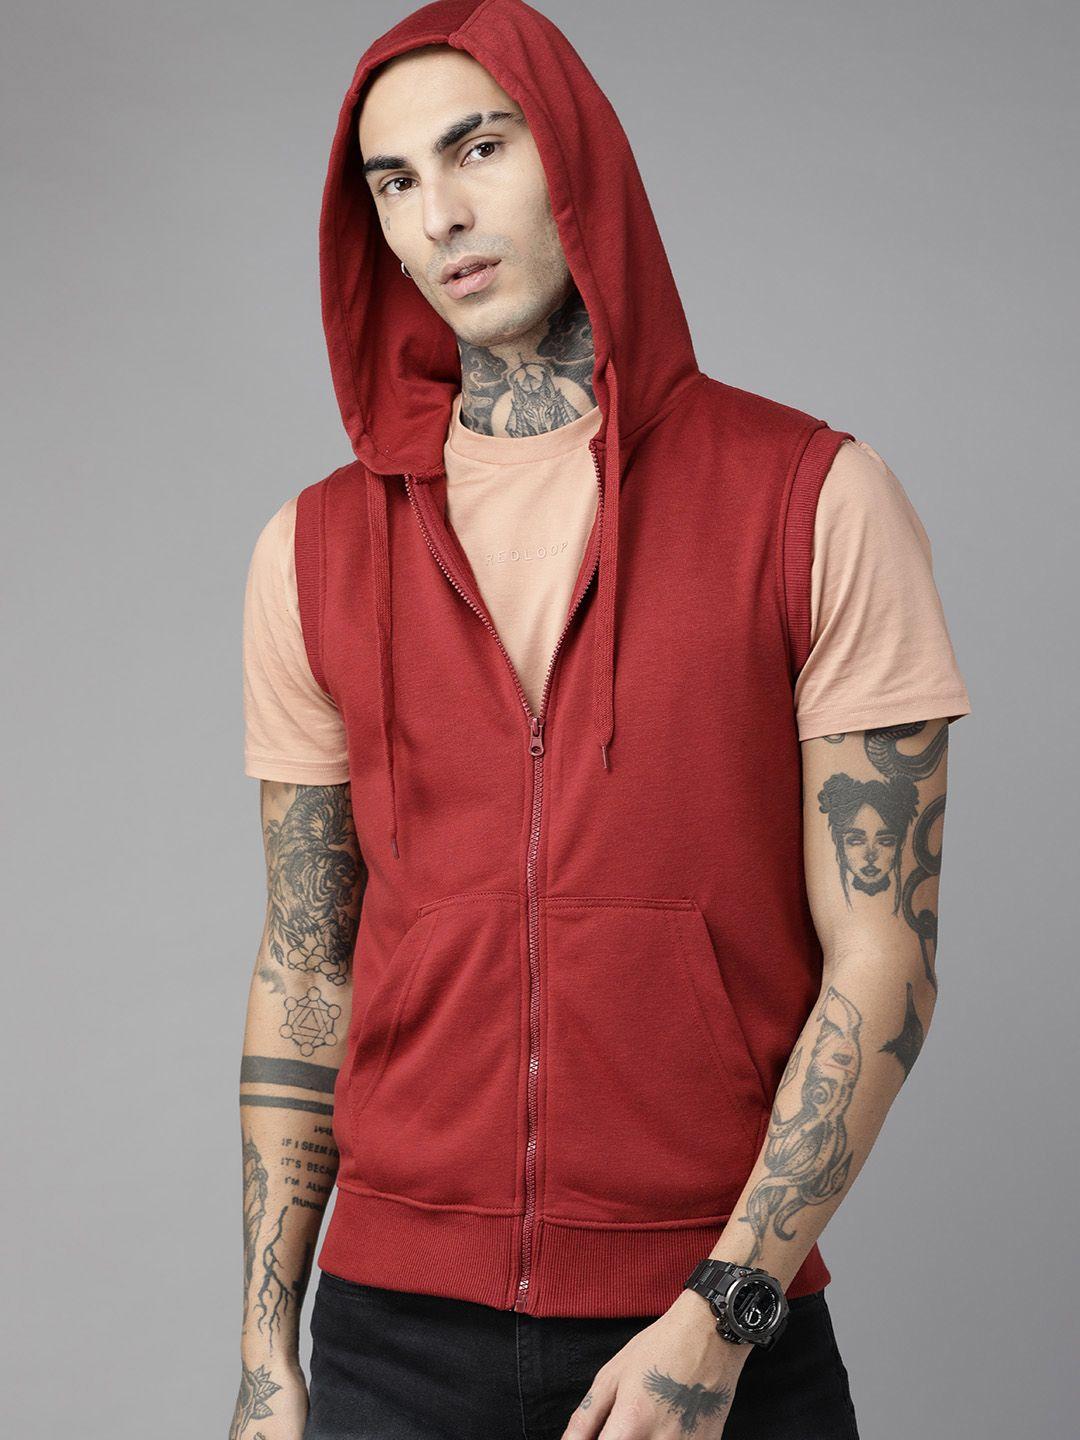 the roadster lifestyle co. sleeveless hooded sweatshirt